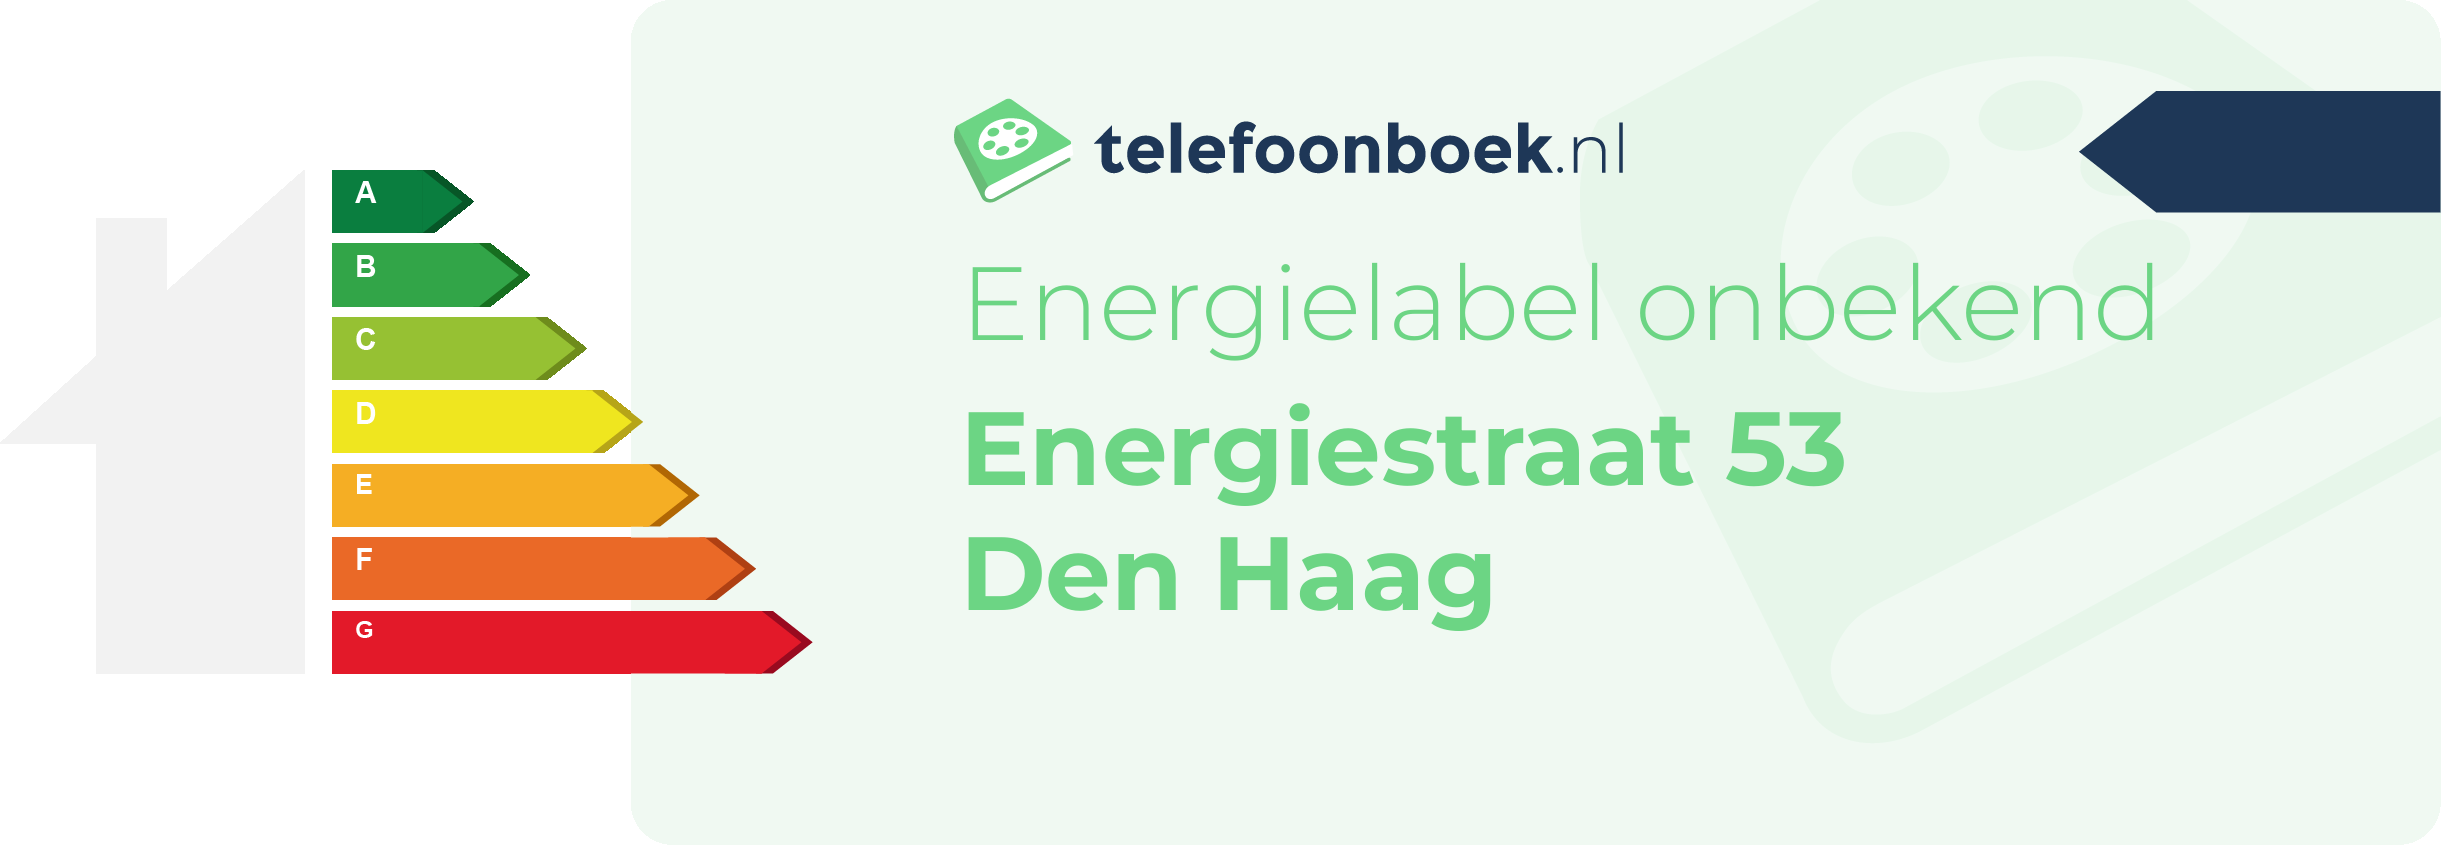 Energielabel Energiestraat 53 Den Haag